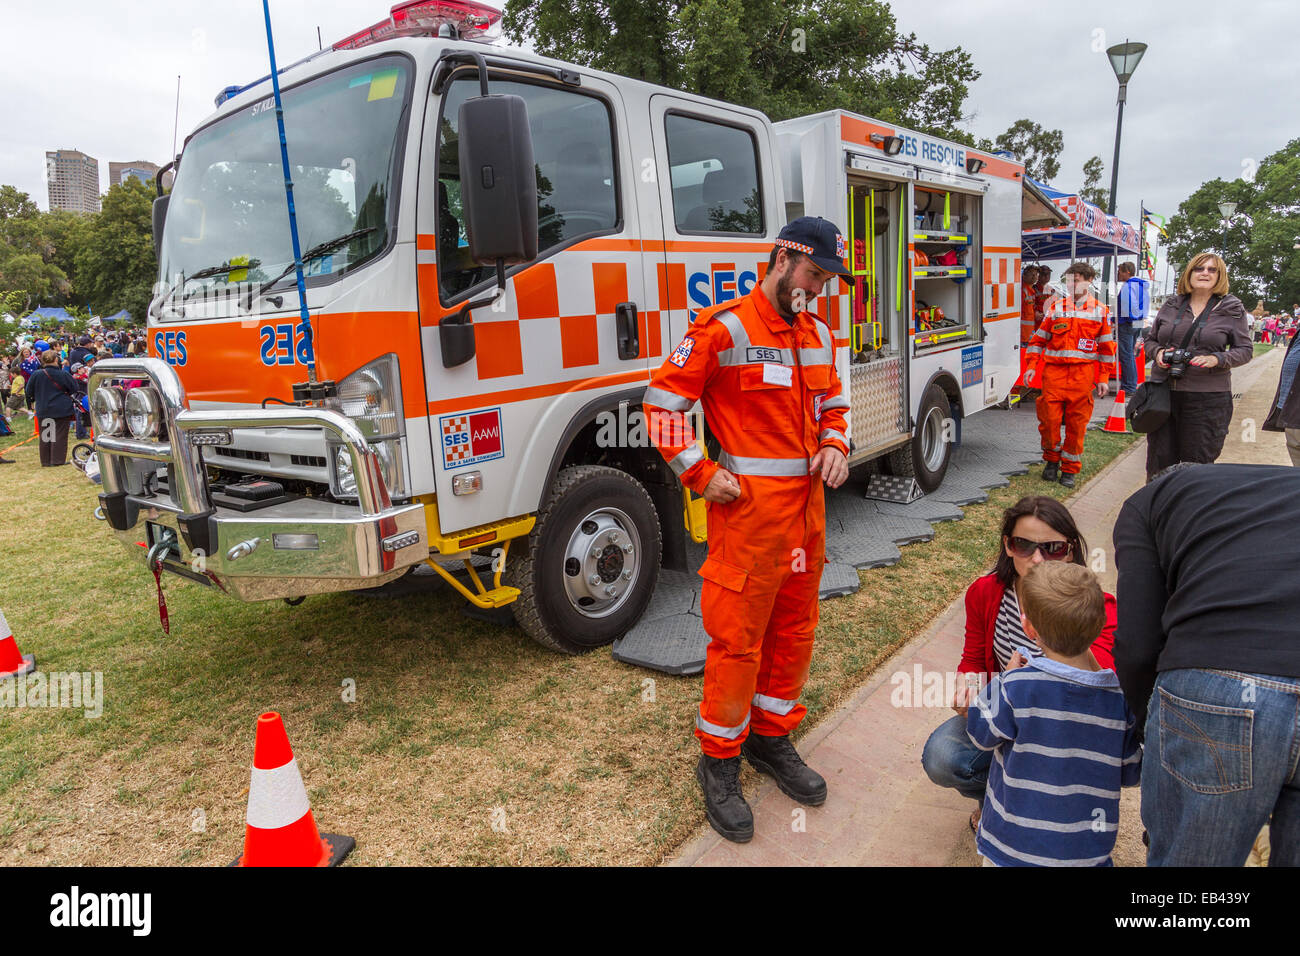 Service d'urgence de l'Etat, SES, l'affichage sur véhicule à Melbourne, Australie Banque D'Images